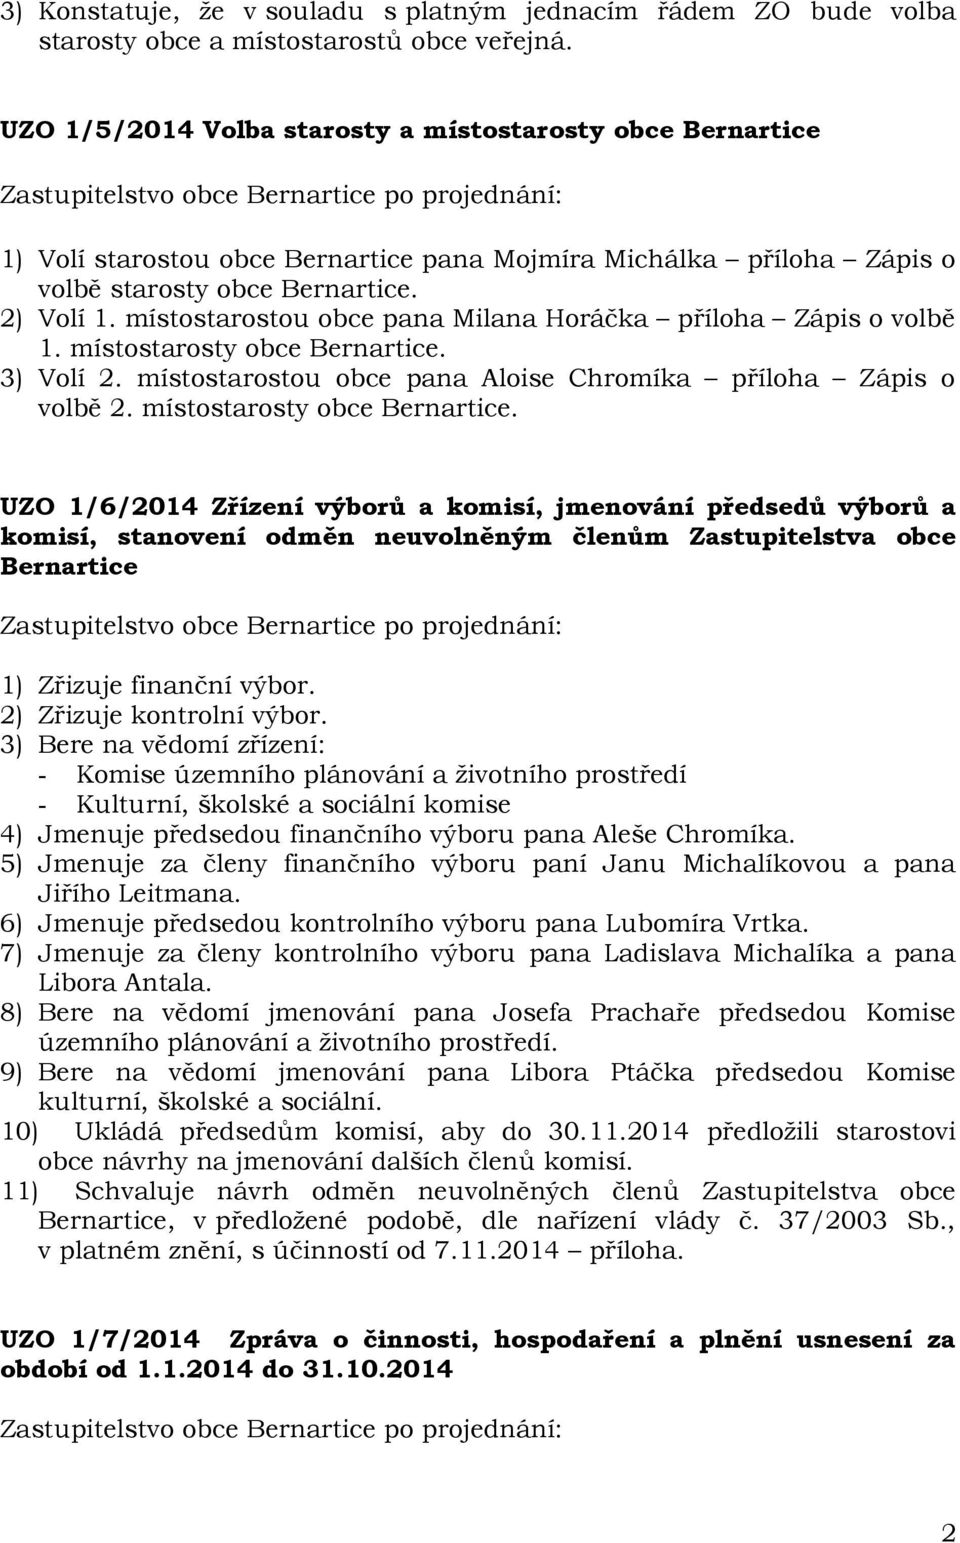 místostarostou obce pana Milana Horáčka příloha Zápis o volbě 1. místostarosty obce.